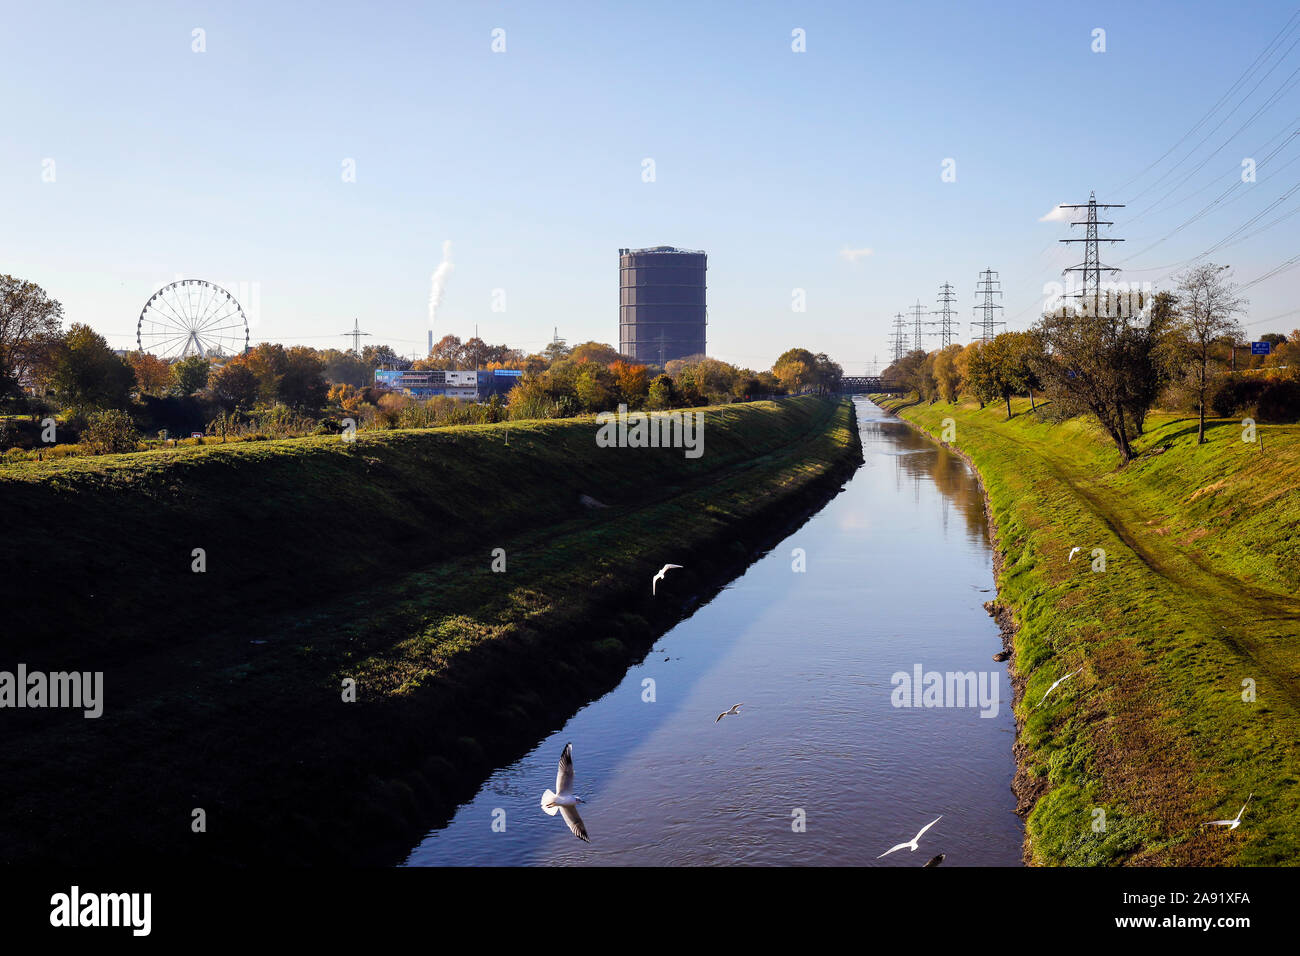 Oberhausen, Ruhrgebiet, Nordrhein-Westfalen, Deutschland - Emscher, in diesem Abschnitt des Flusses, die noch nicht in die Kanalisation gelangen renaturiert worden ist noch in d Stockfoto